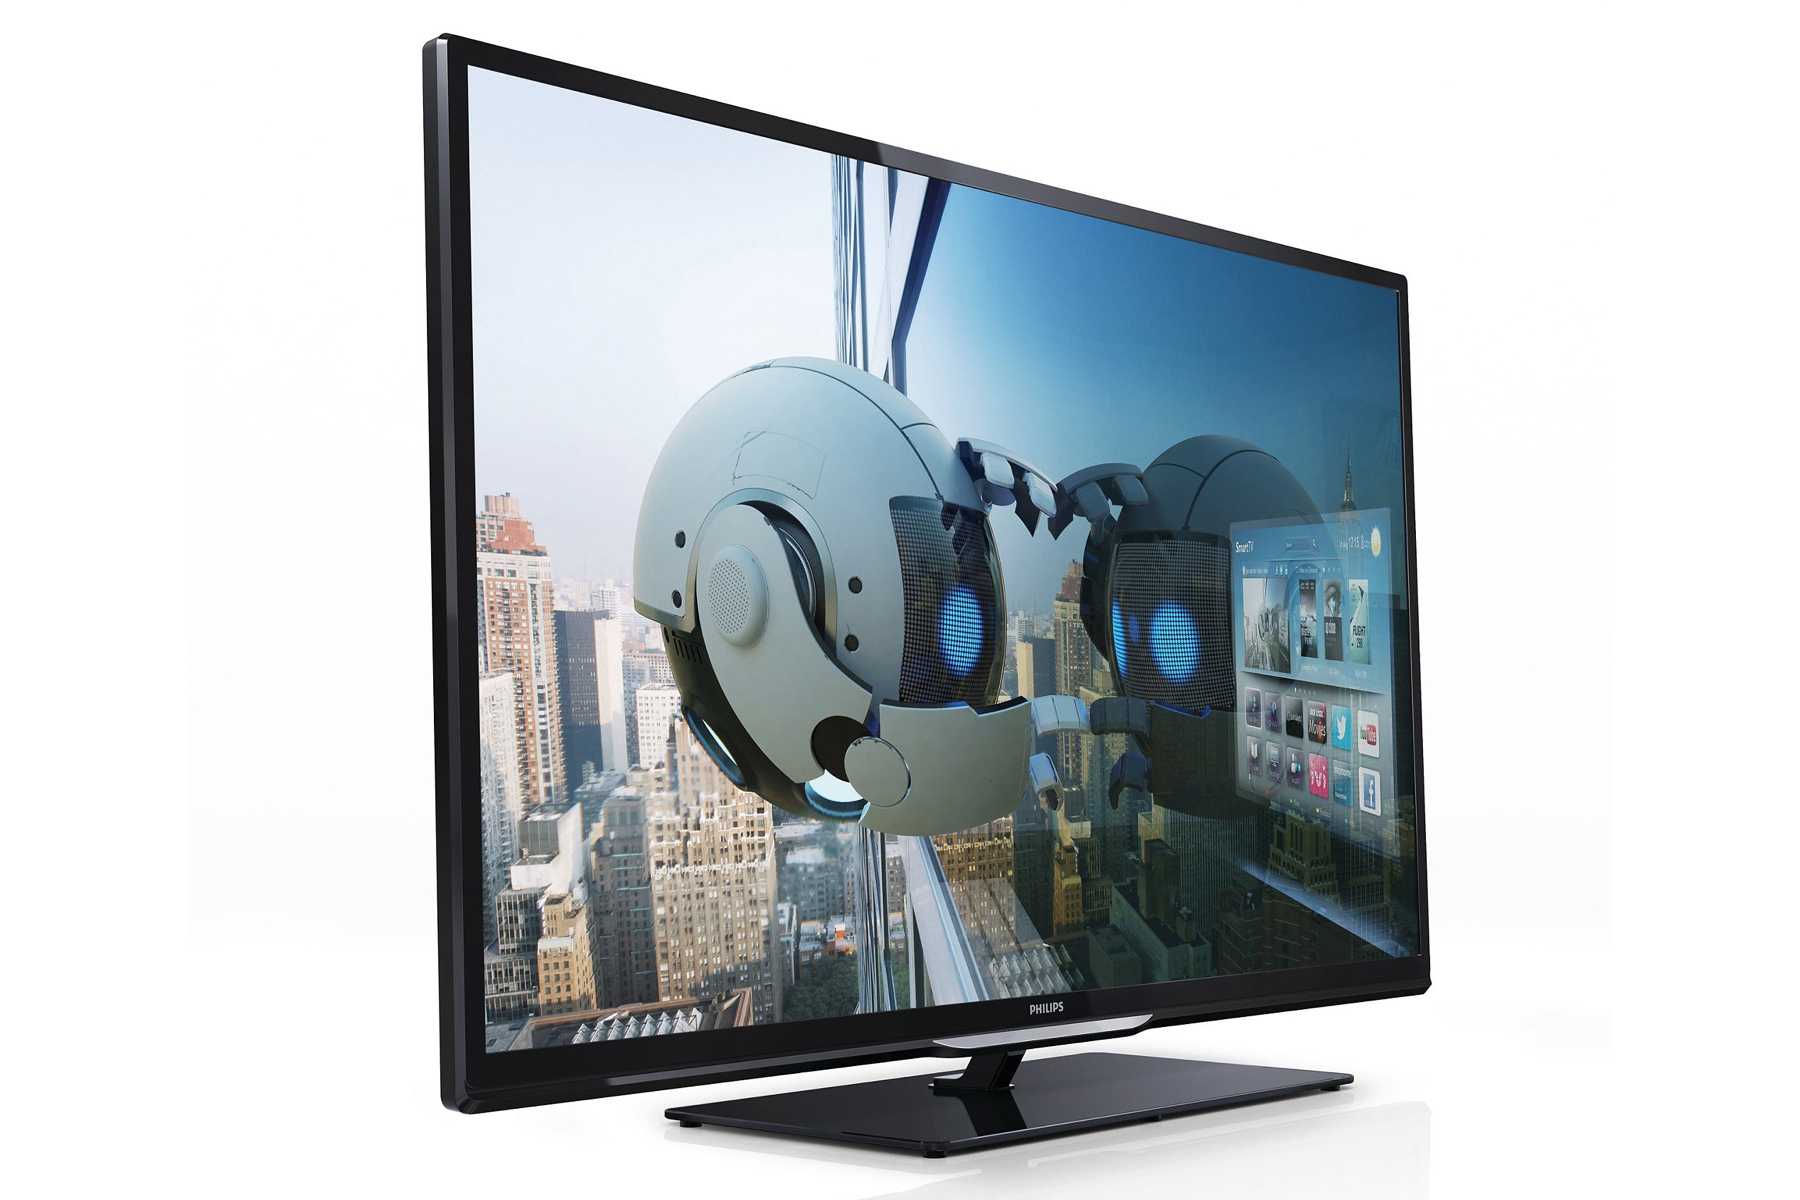 Телевизор Philips 39PFL4208H - подробные характеристики обзоры видео фото Цены в интернет-магазинах где можно купить телевизор Philips 39PFL4208H